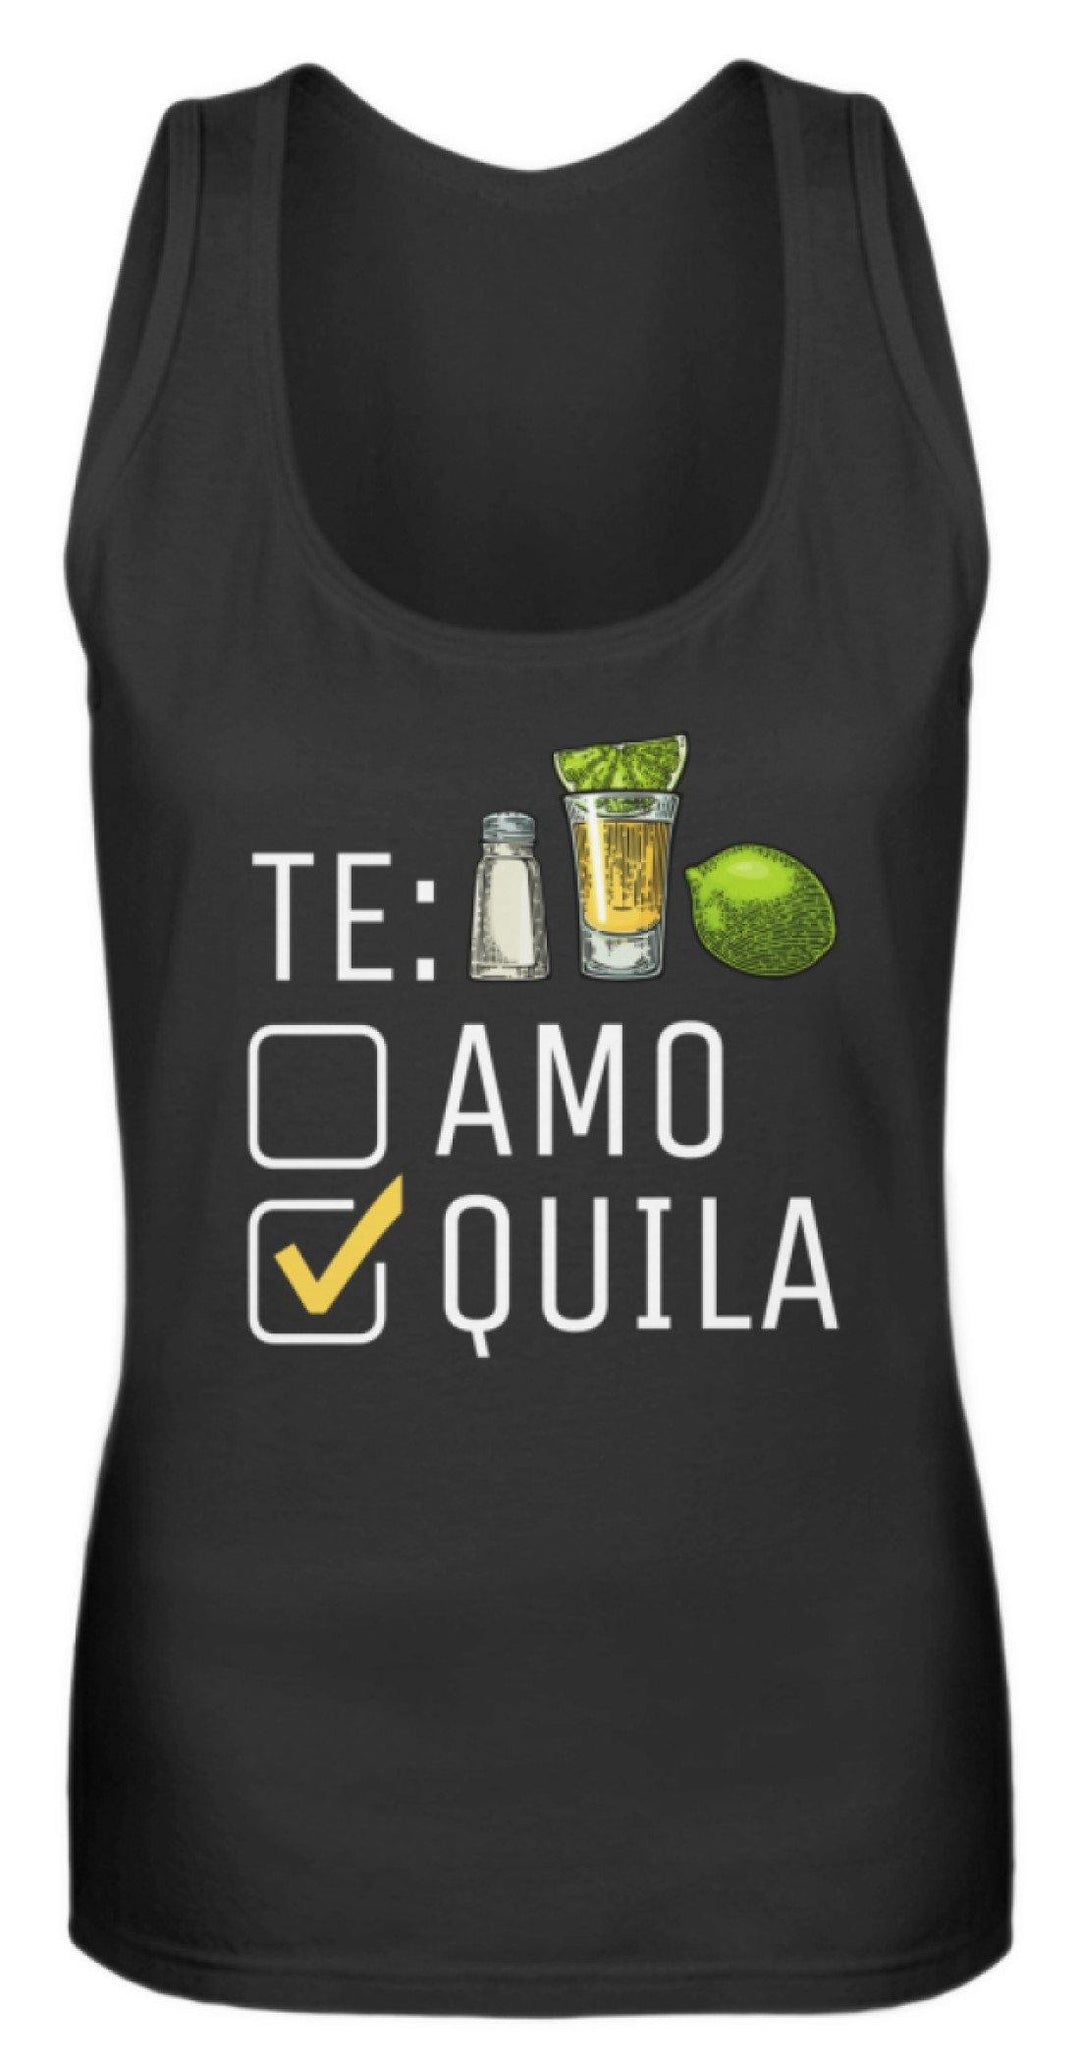 Tequila Te:amo Te:qulia   - Frauen Tanktop - Words on Shirts